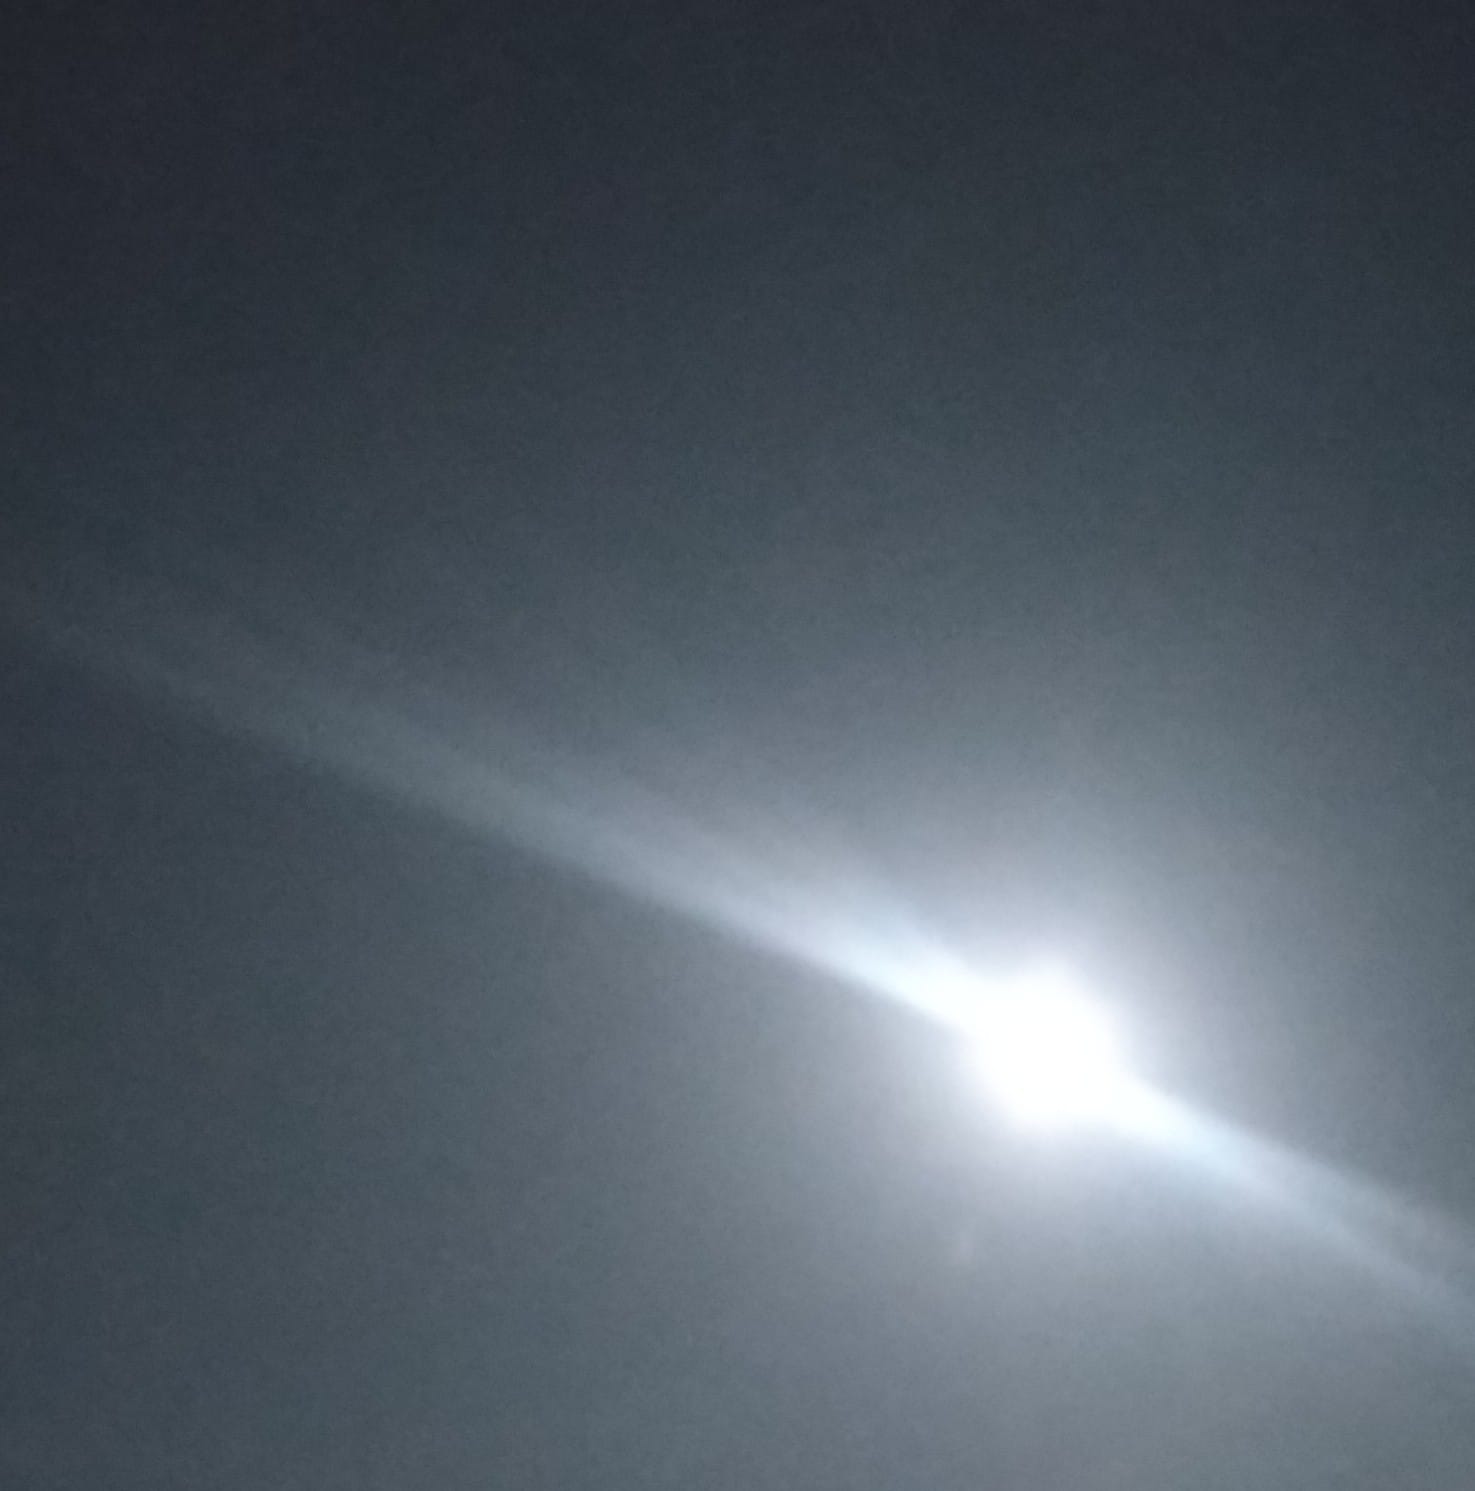 「『月が綺麗ですね』」04/22(月) 22:24 | No.33 山田の写メ